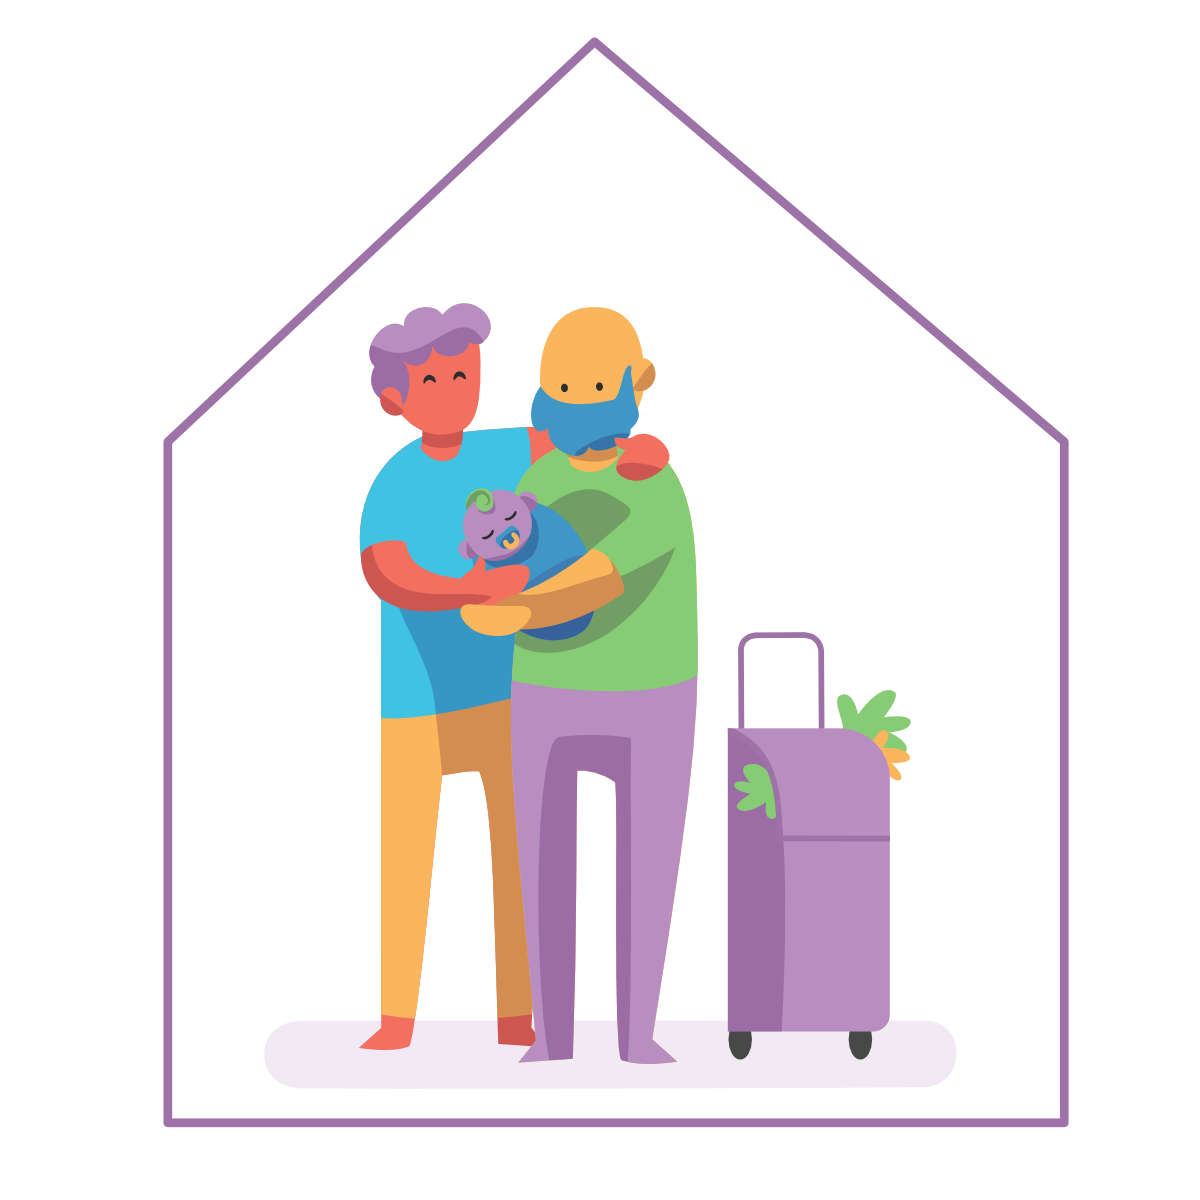 Dibujo de una familia que sostiene un bebé y tiene un carrito de la compra del que asoman verduras. Les rodea un trazo con forma de casa.